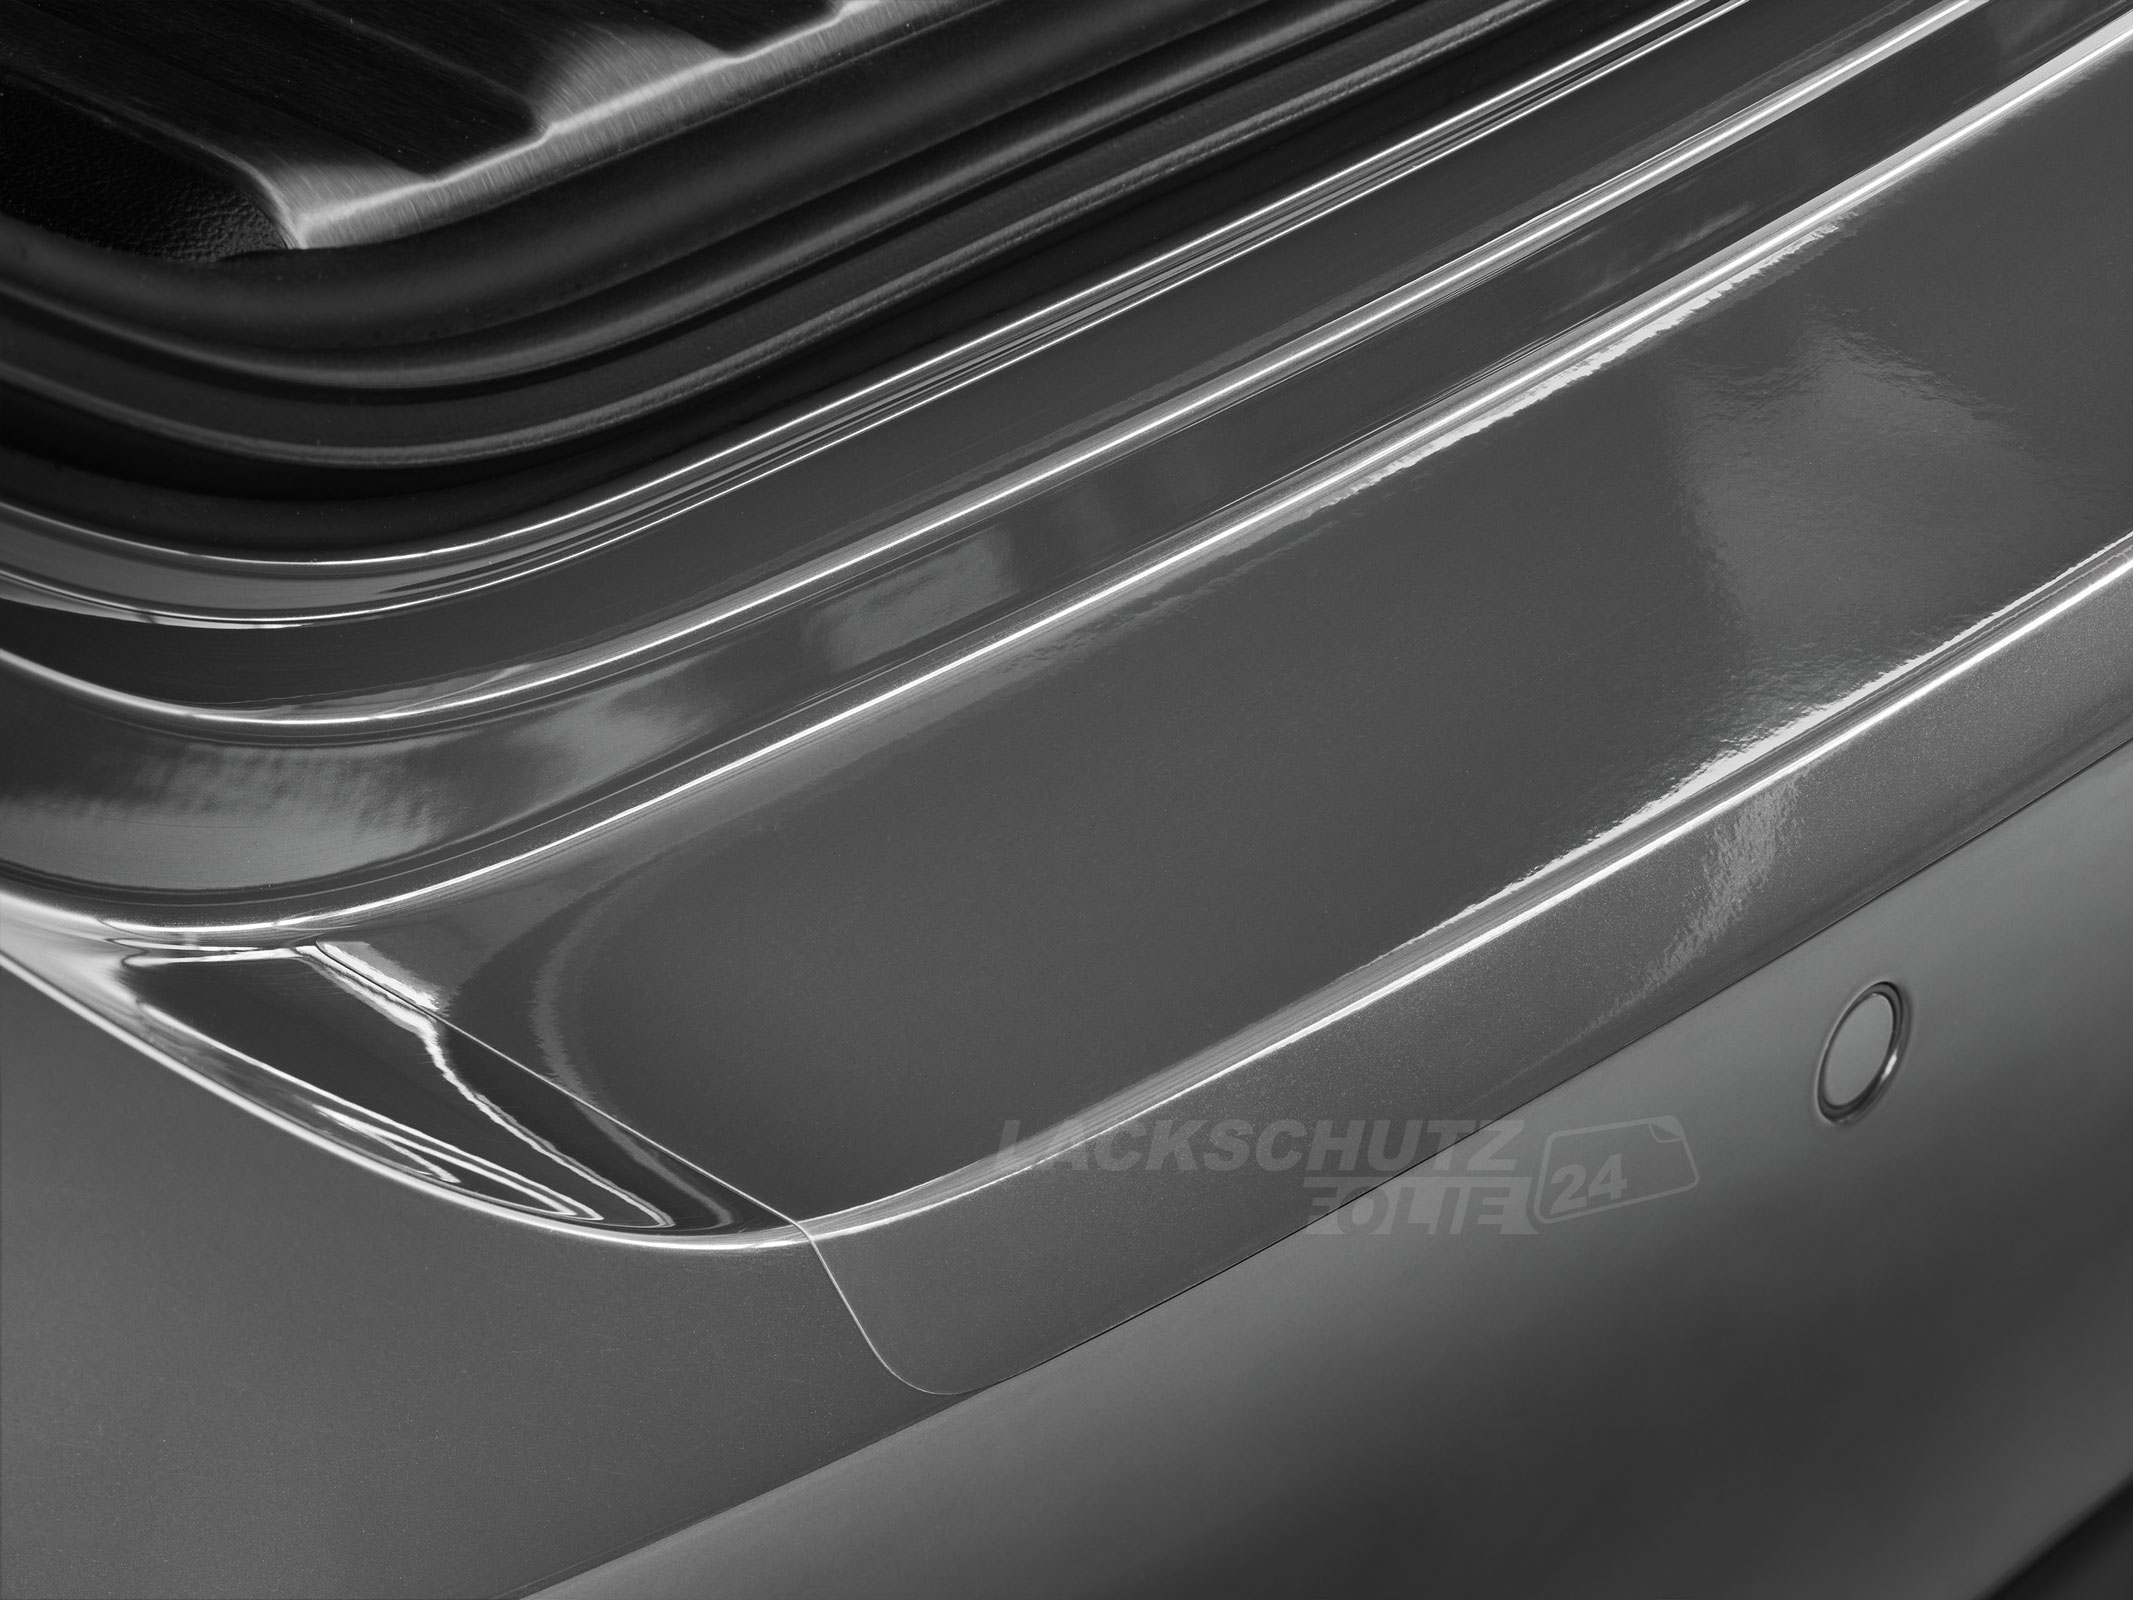 Ladekantenschutzfolie - Transparent Glatt Hochglänzend 240 µm stark für Nissan X-Trail Typ T30, Facelift, ab BJ 2003-2007